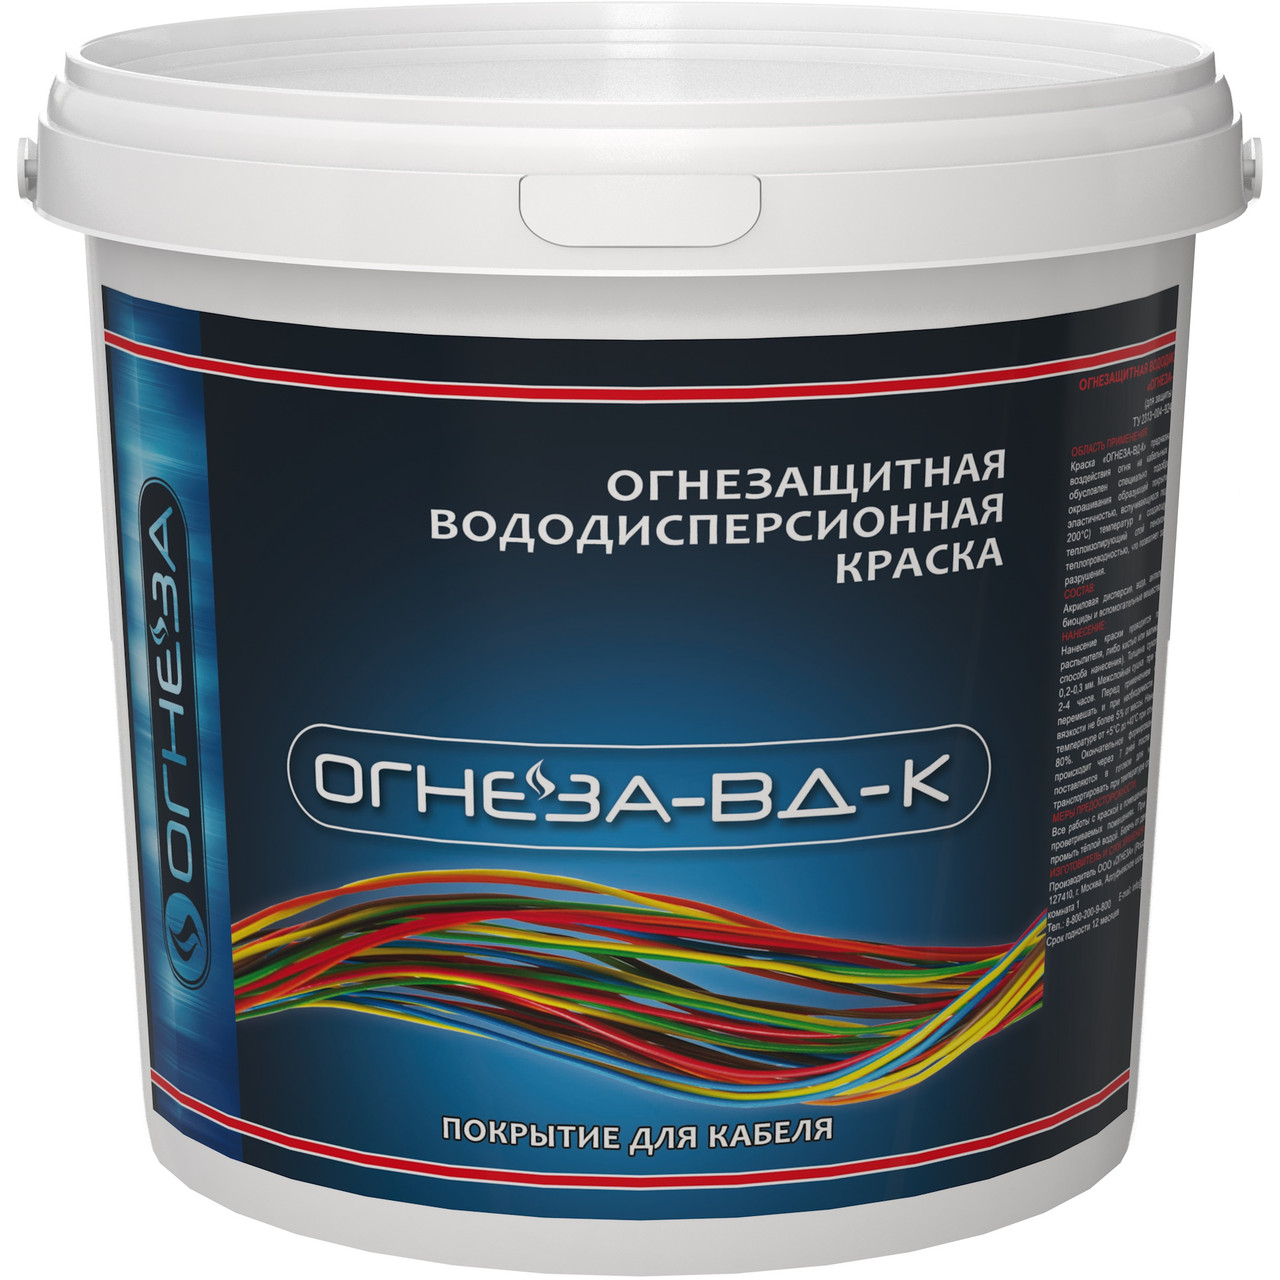 Огнезащитная краска для кабеля "ОГНЕЗА-ВД-К" 3 кг